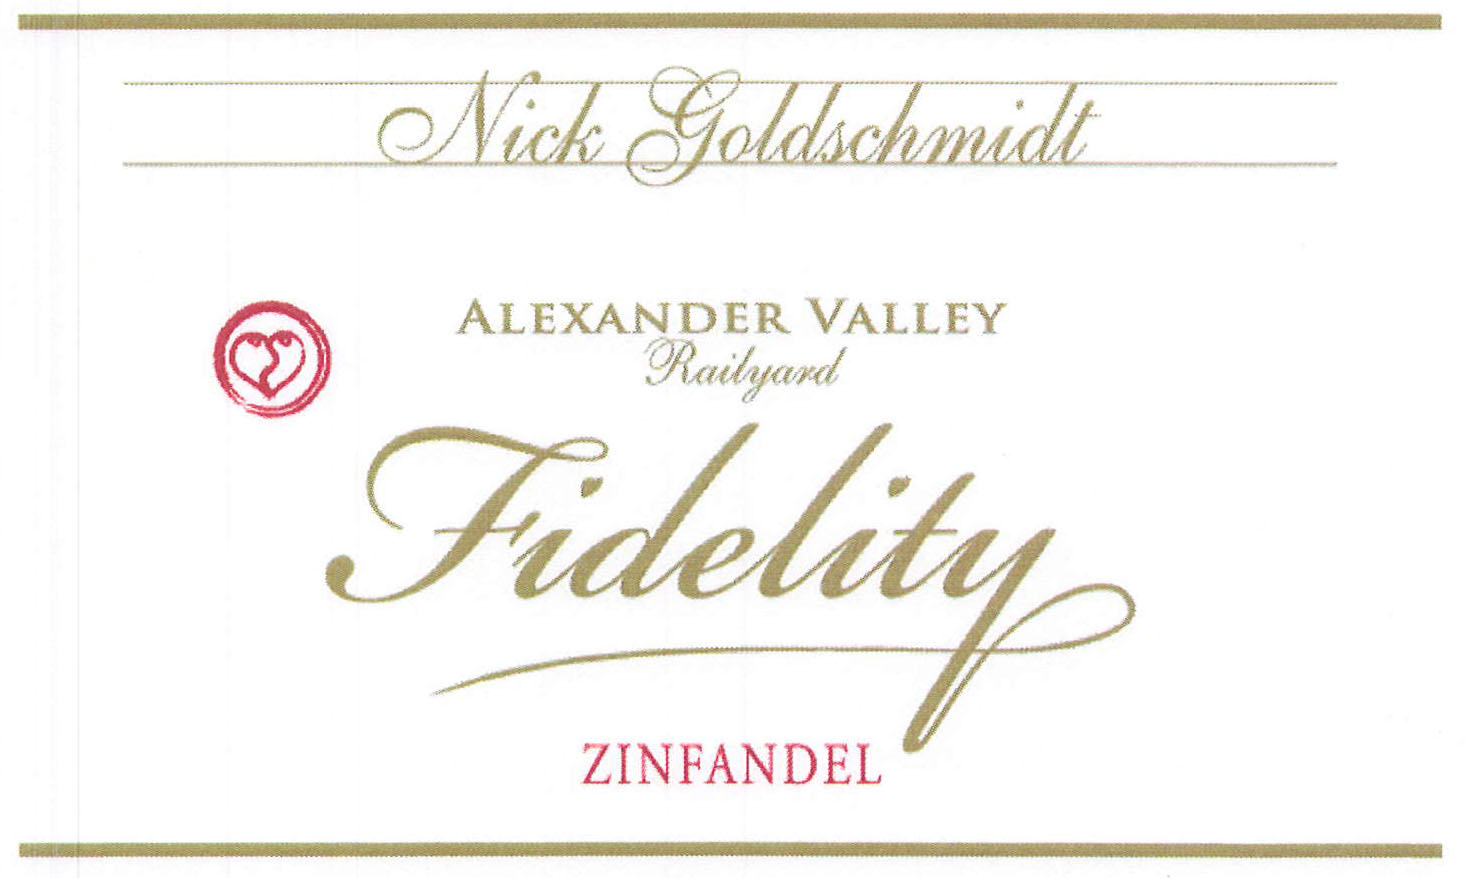 Nick Goldschmidt - Zinfandel - Fidelity label